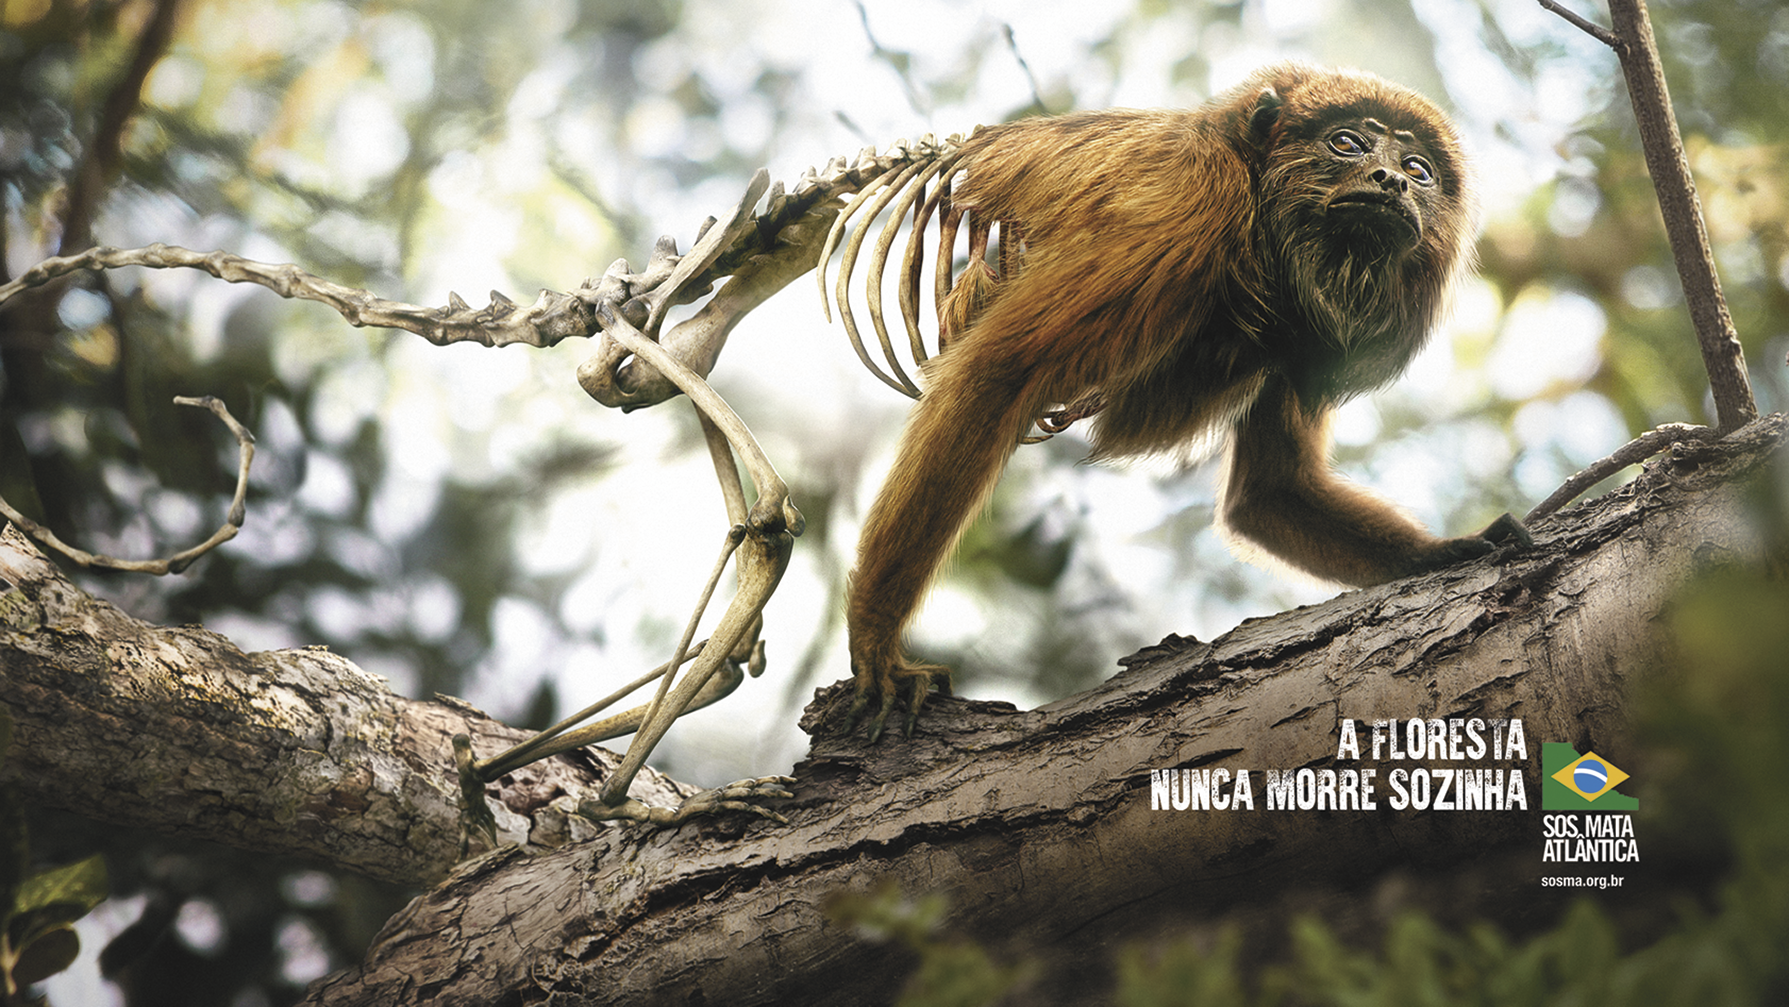 Cartaz. Um macaco de cor alaranjada caminhando entre troncos de uma árvore. Parte de seu corpo é composto apenas pelo seu esqueleto. Na parte inferior, a frase: A FLORESTA NUNCA MORRE SOZINHA; seguida pelo logotipo SOS MATA ATLÂNTICA.